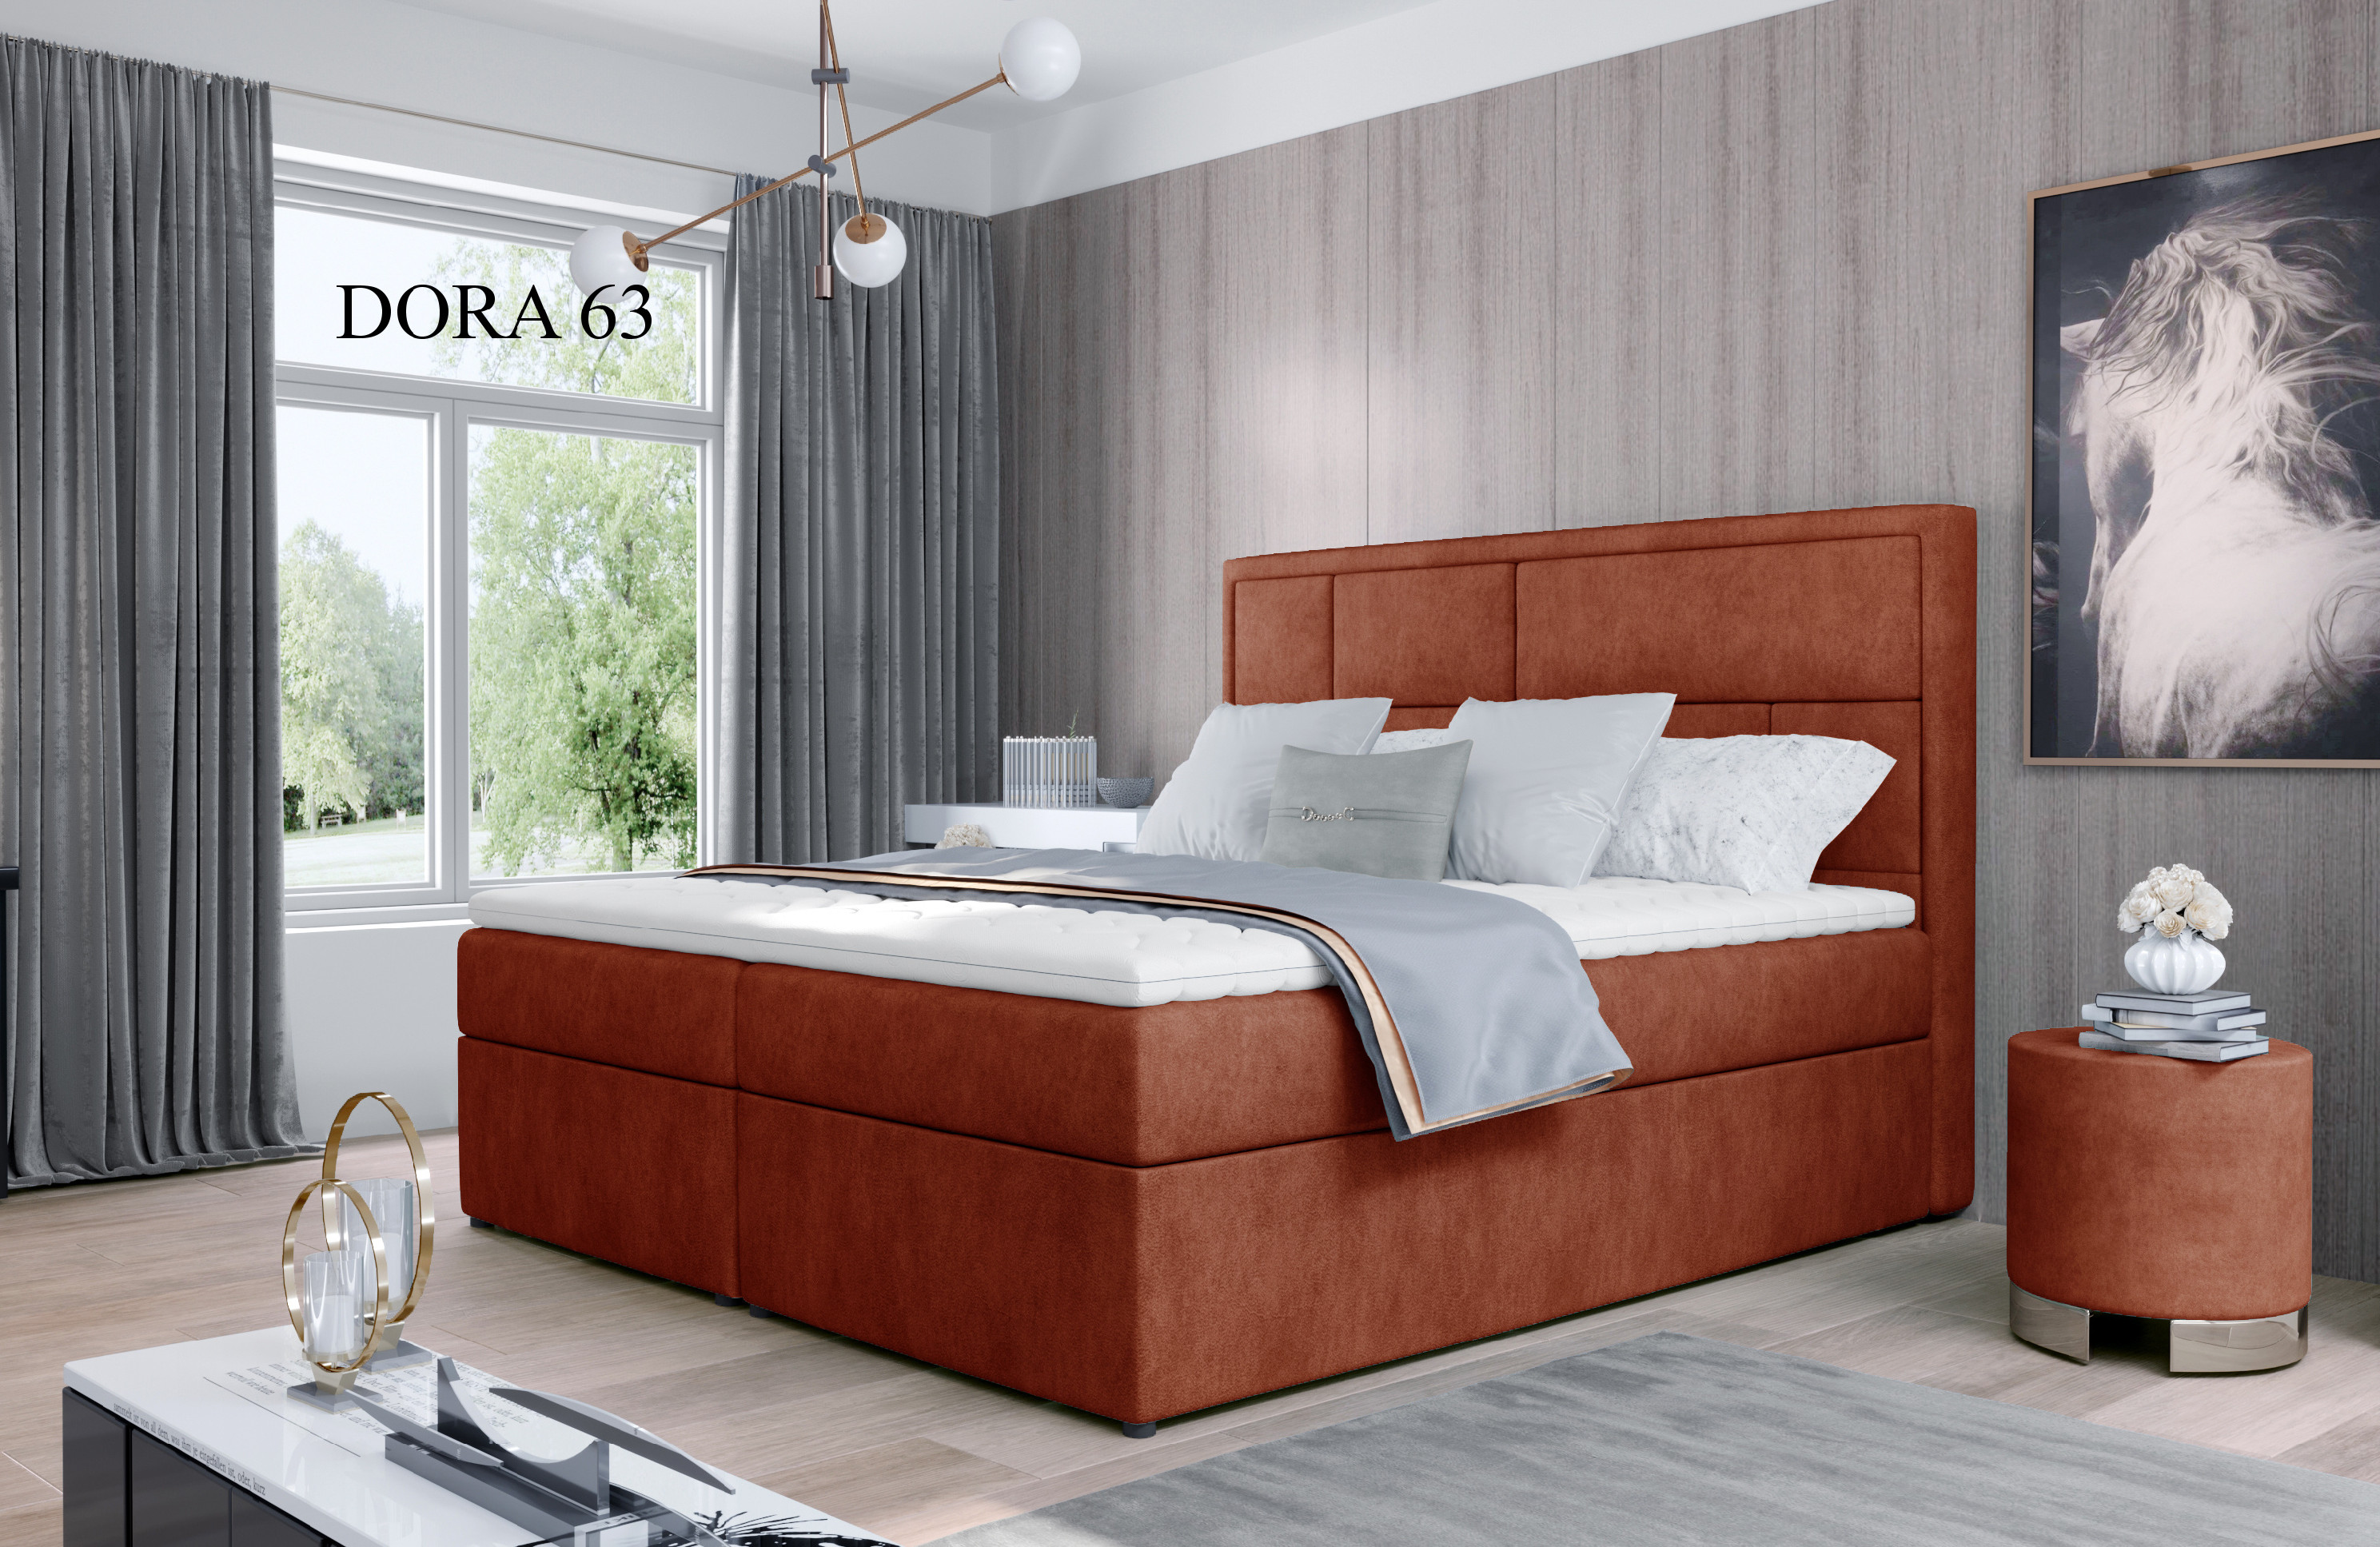 Čalouněná postel MERON Boxsprings 140 x 200 cm Dora 63